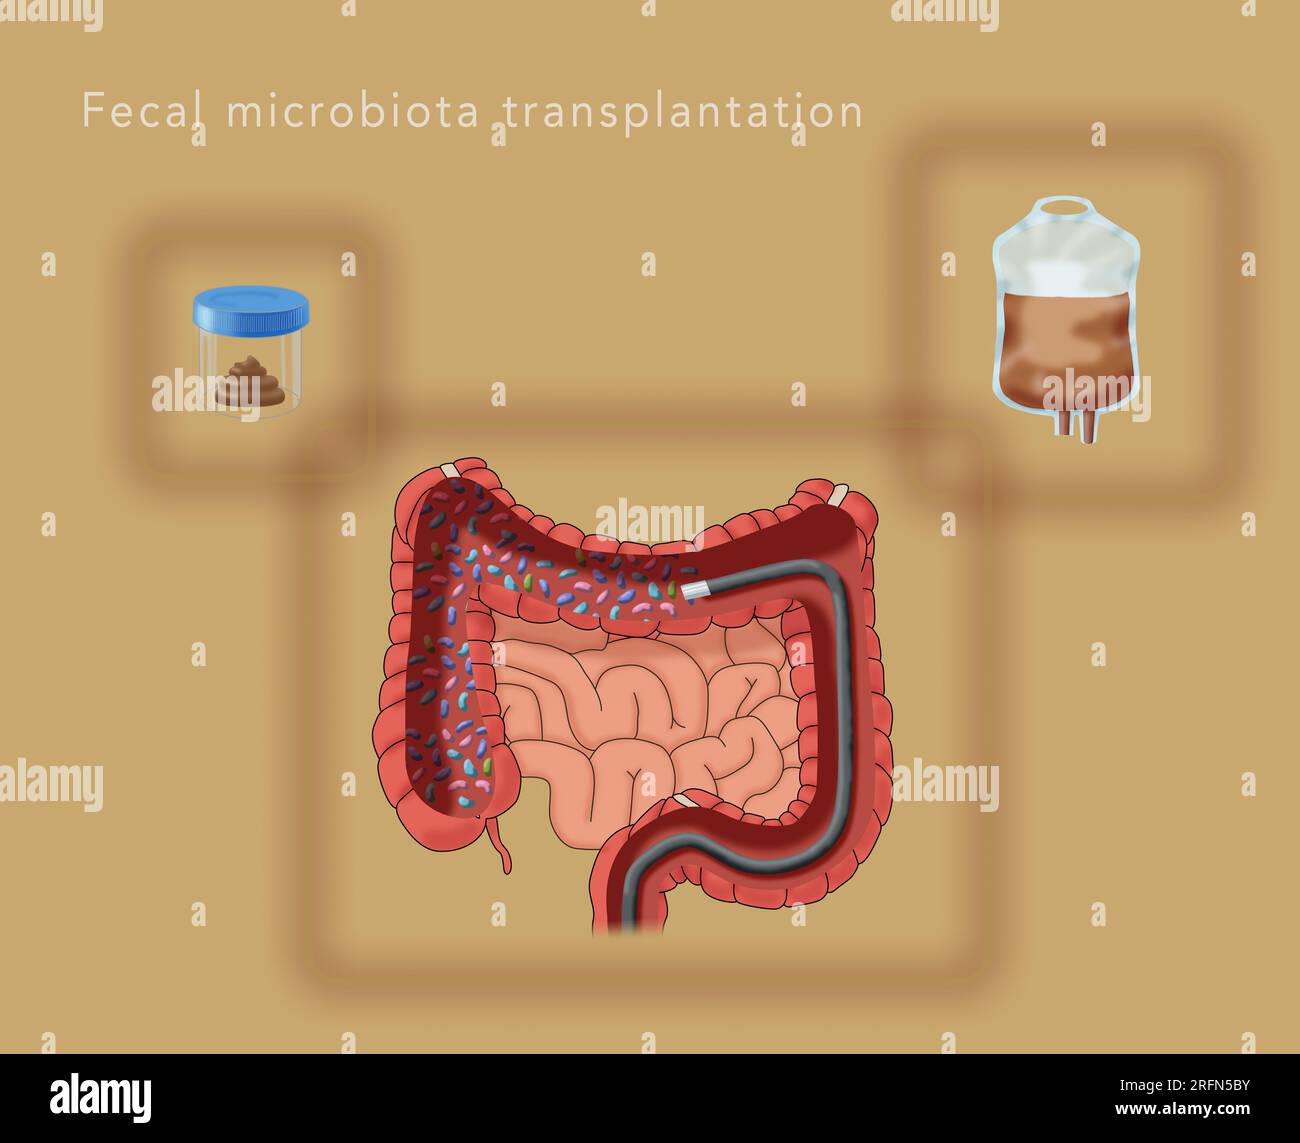 Un'illustrazione dei componenti del trapianto di microbiota fecale per migliorare il bioma umano. Le raccolte da un donatore sano, la preparazione con soluzione salina in una sacca di gocciolamento IV, e una colonscopia. Foto Stock